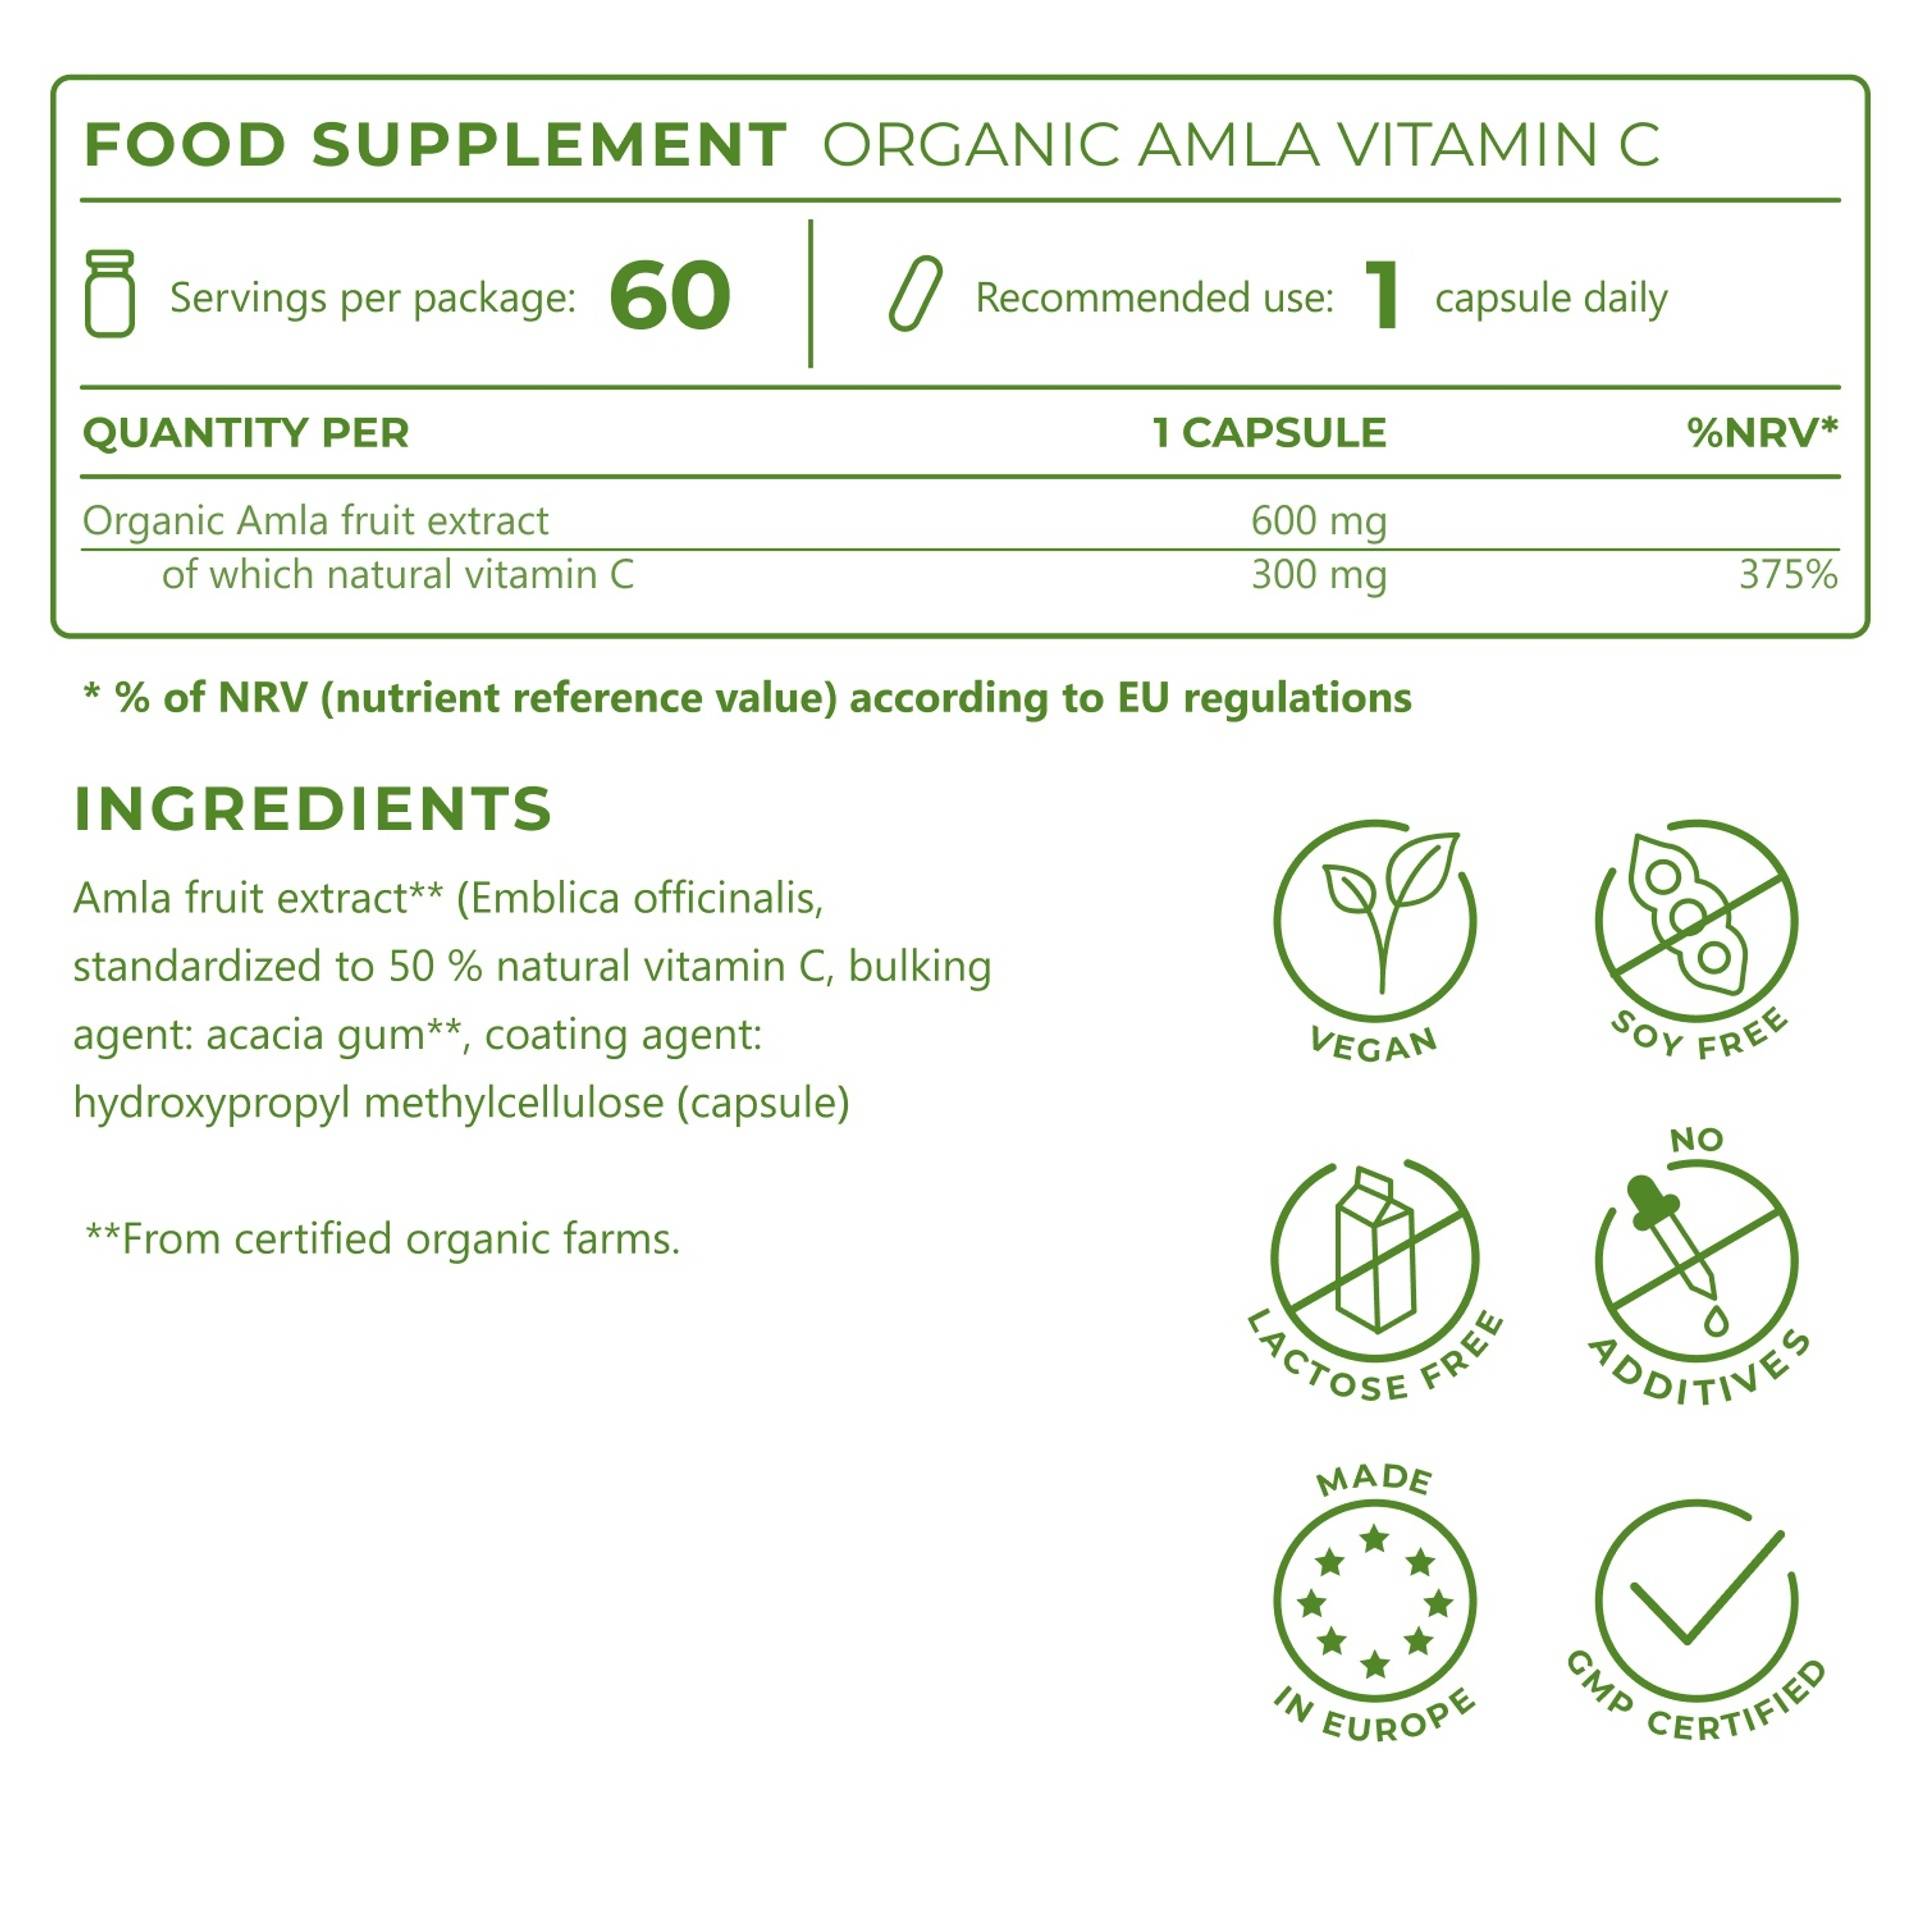 5_EN_Ingredients_Organic-Amla-Vitamin-C_6971.png